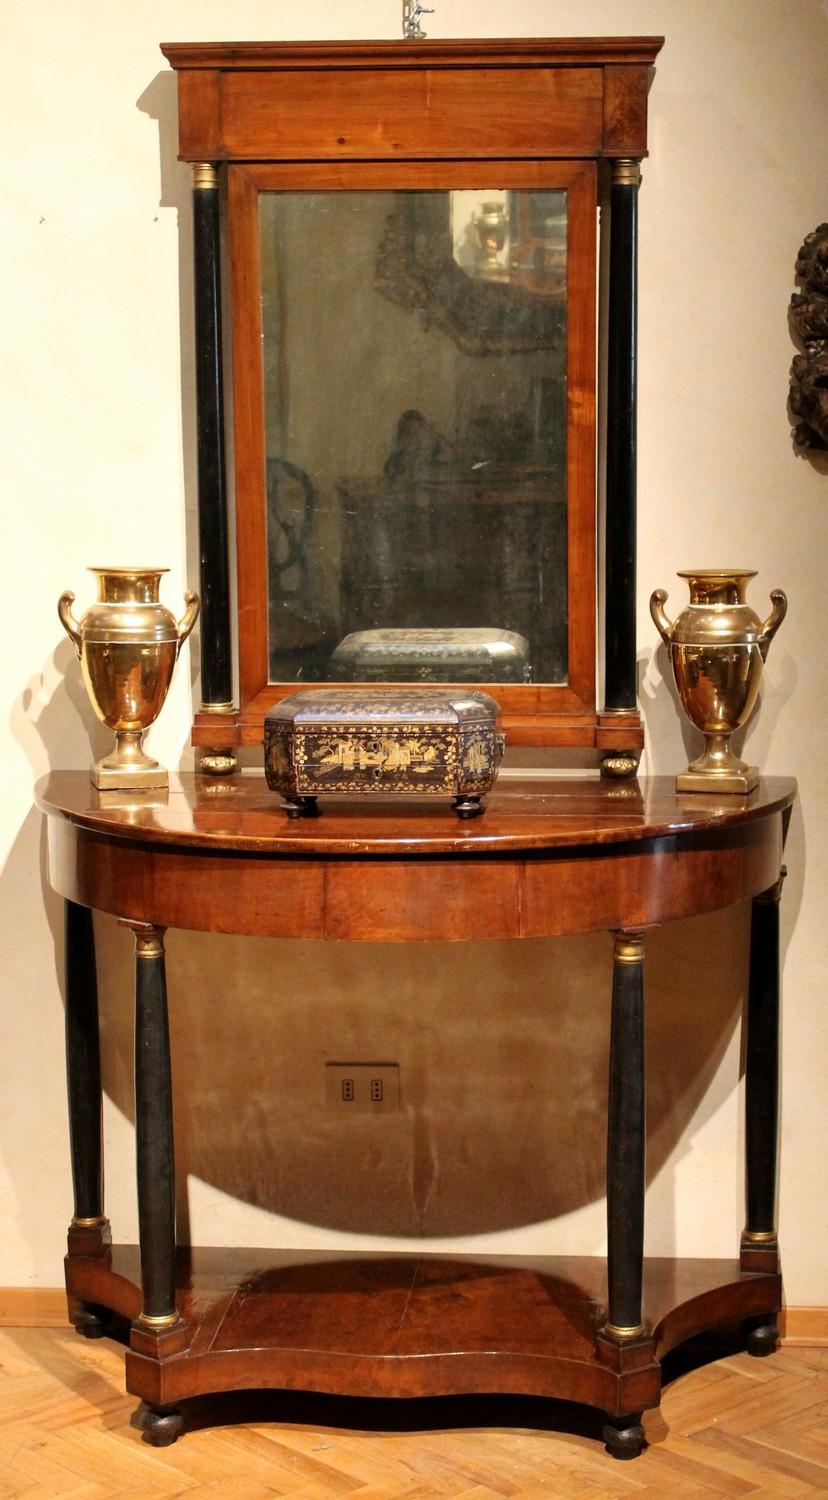 Ces belles consoles anciennes de style Empire italien avec miroir datent du début du 19e siècle. Nous pouvons supposer qu'ils ont été fabriqués à Florence, en Italie, et qu'ils proviennent d'une villa de la campagne toscane. 
Il s'agit de tables